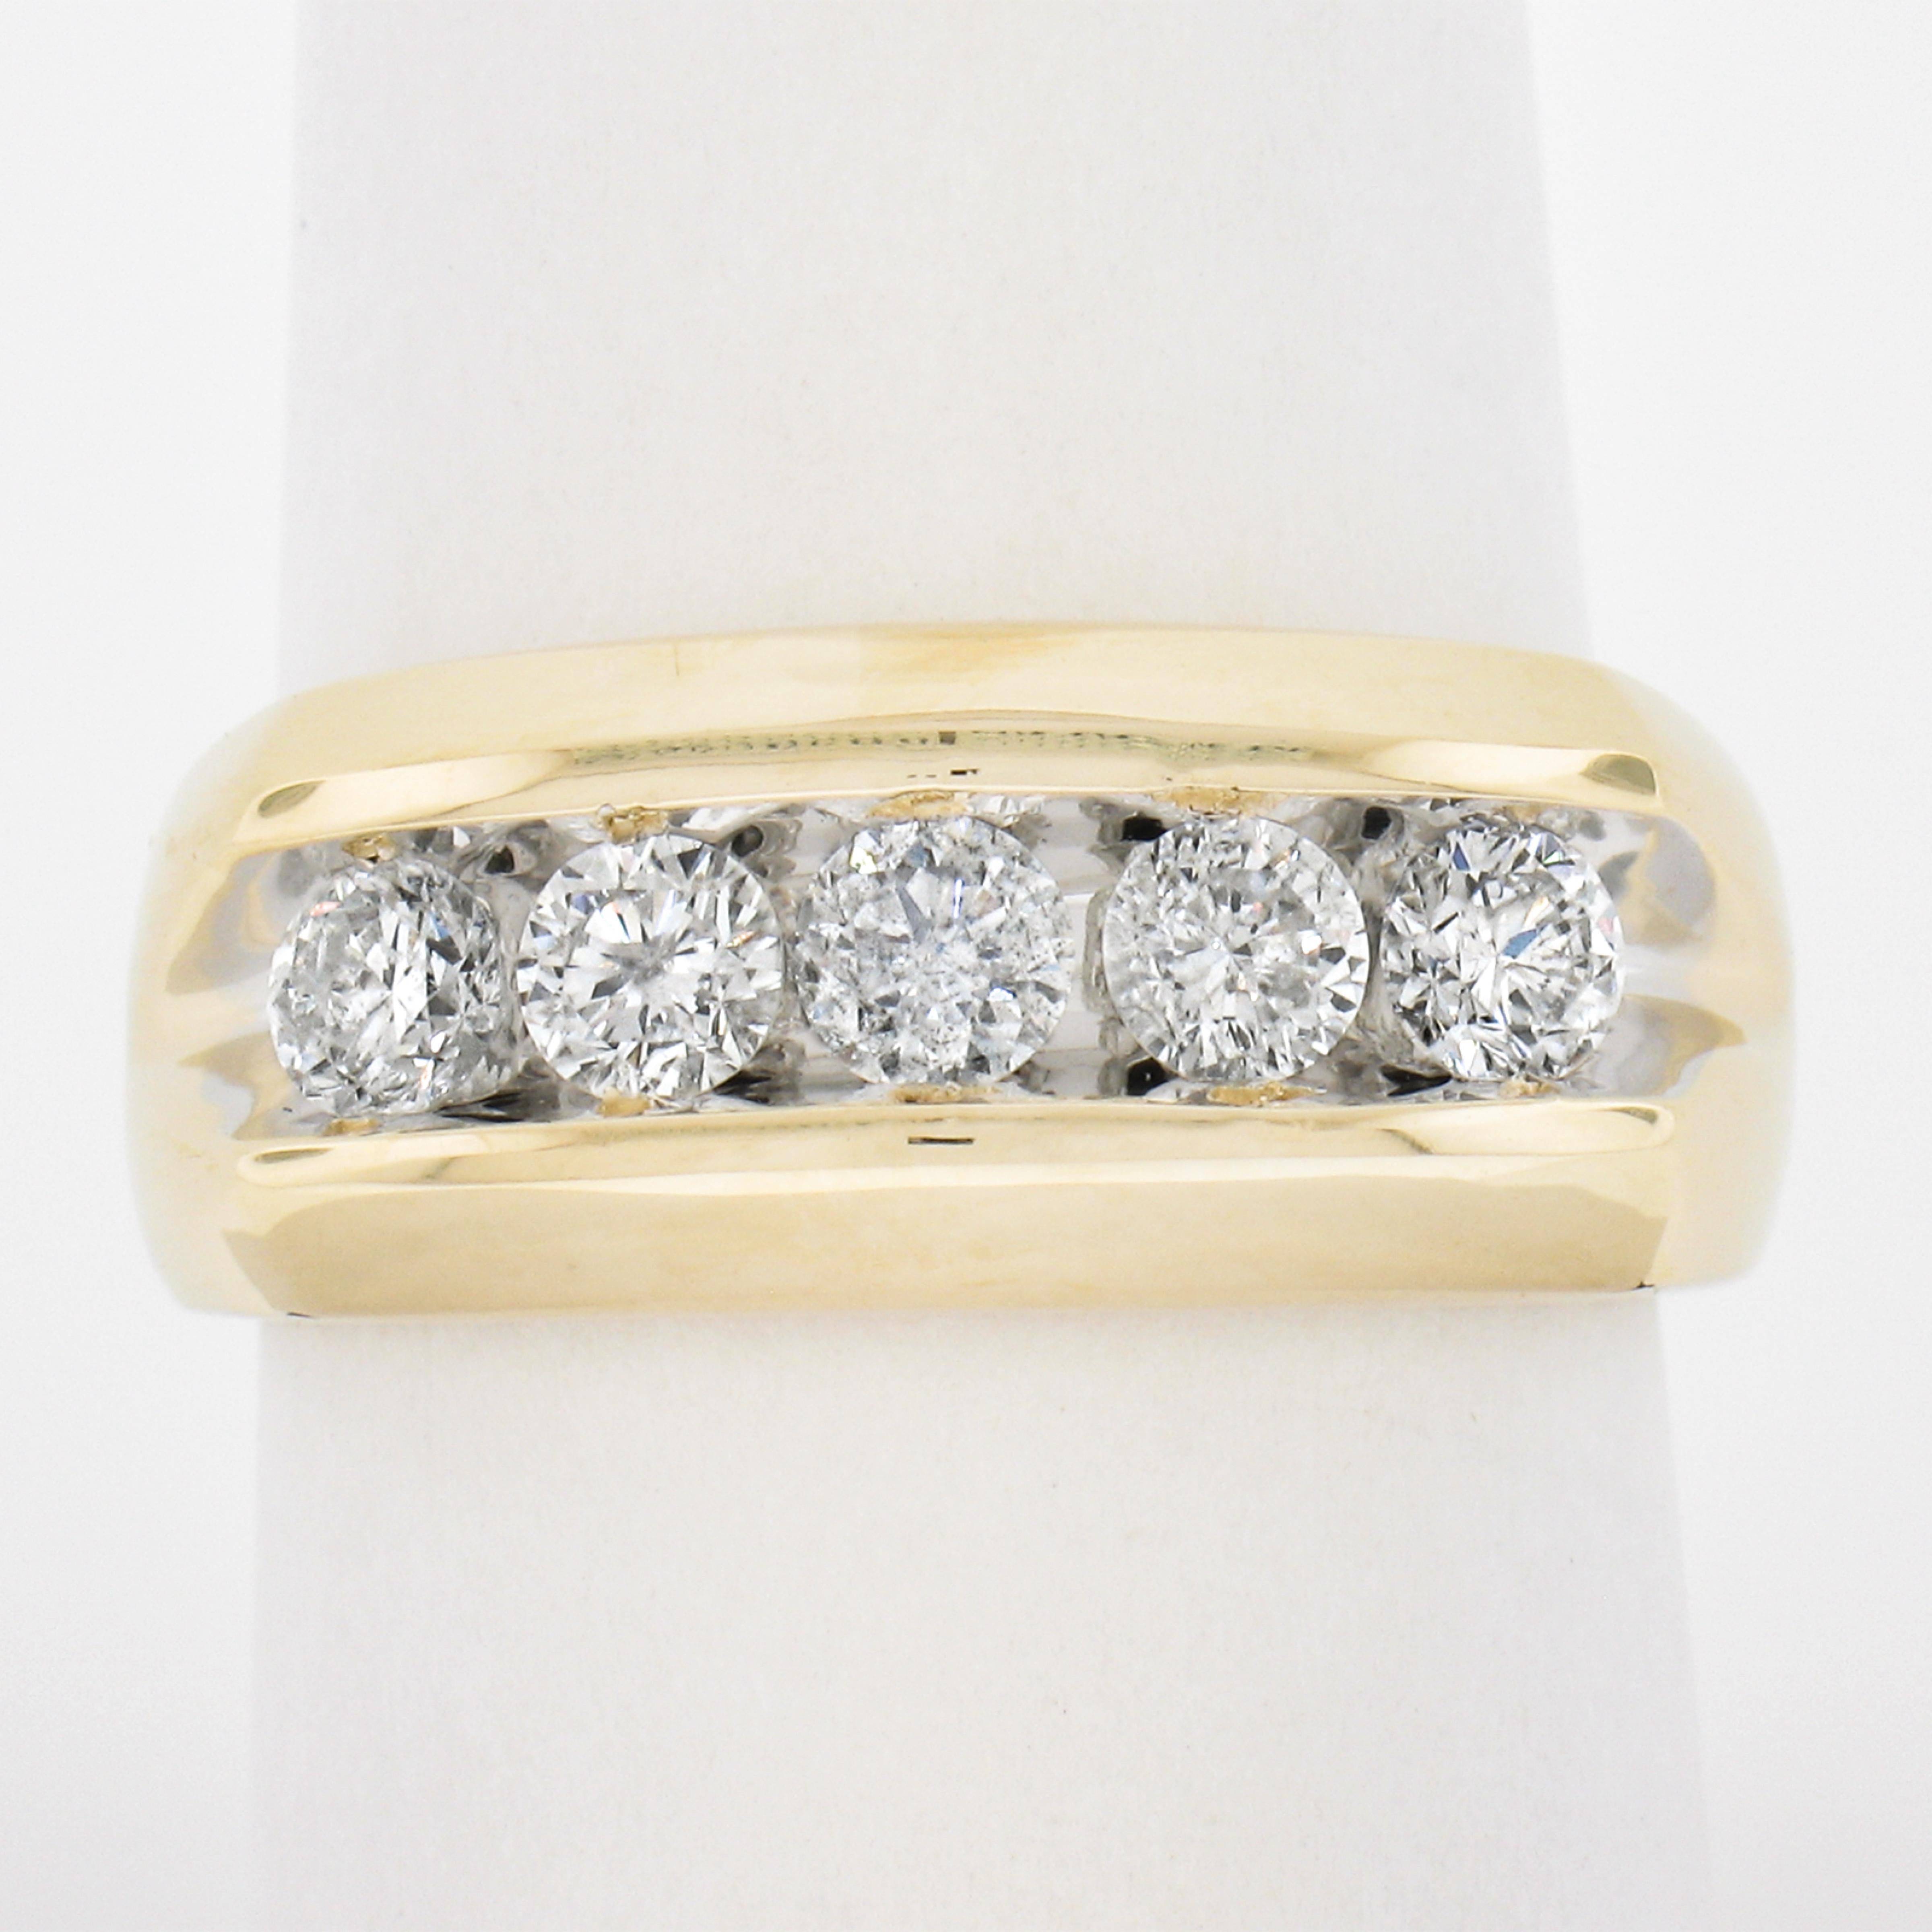 --Pierre(s) :...
(5) Diamants naturels authentiques - taille ronde et brillante - en serti clos - couleur G/H - pureté SI2-I2 
Poids total en carats :	1,00 (environ)

MATERIAL : Or jaune massif 14K
Poids : 8,11 grammes
Taille de la bague : 8.5